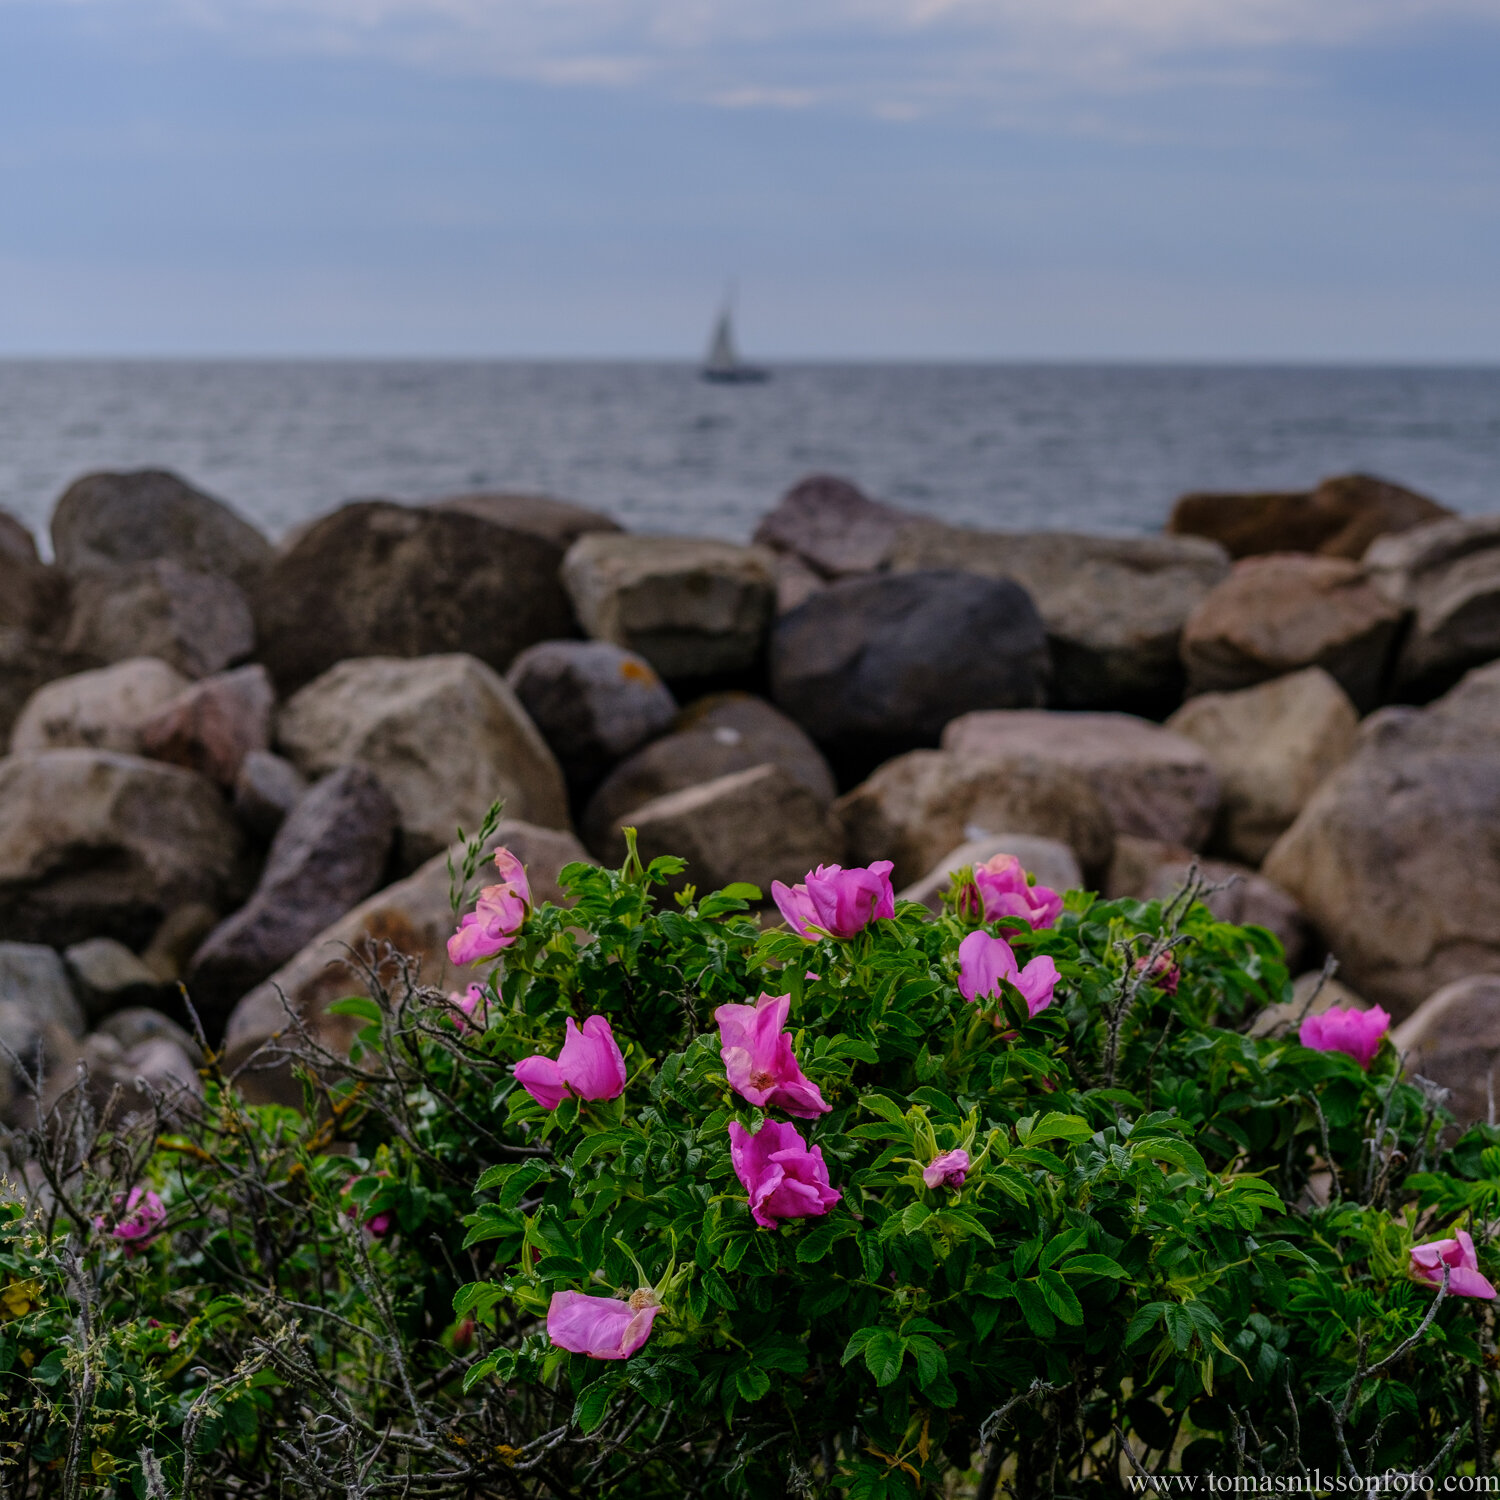 Day 183 - July 2: Seaside Flowers